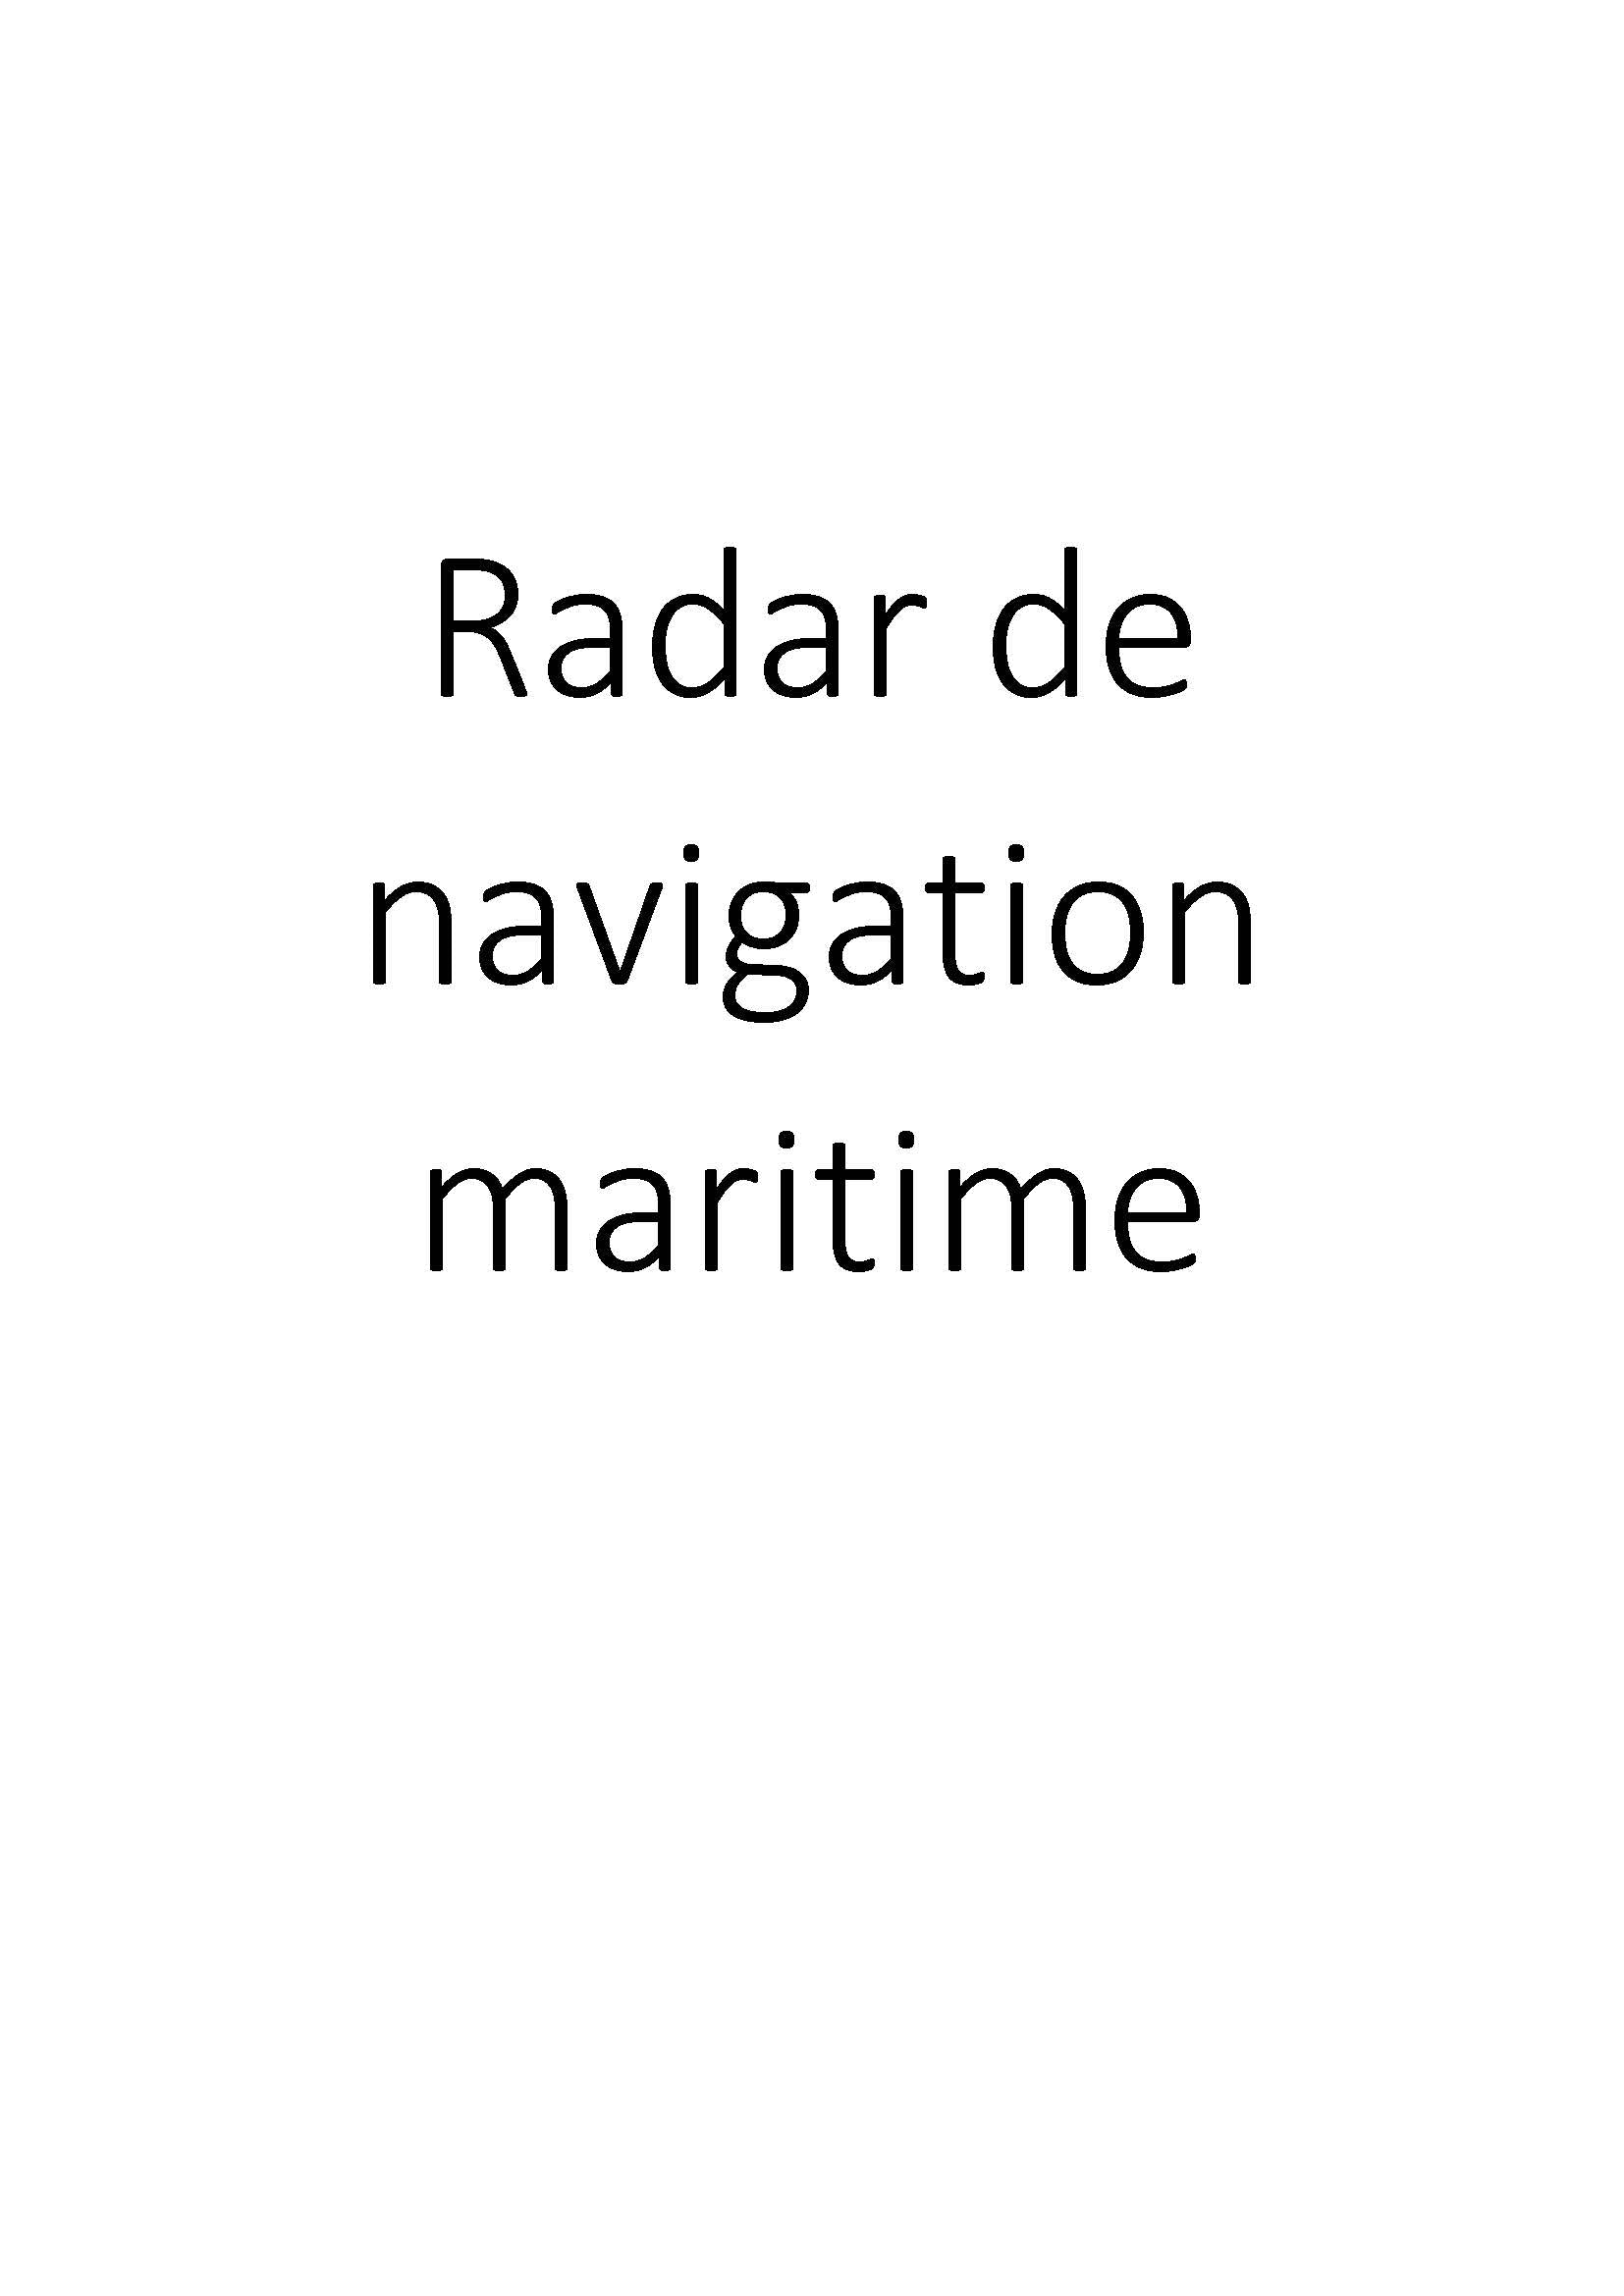 Radar de navigation maritime clicktofournisseur.com